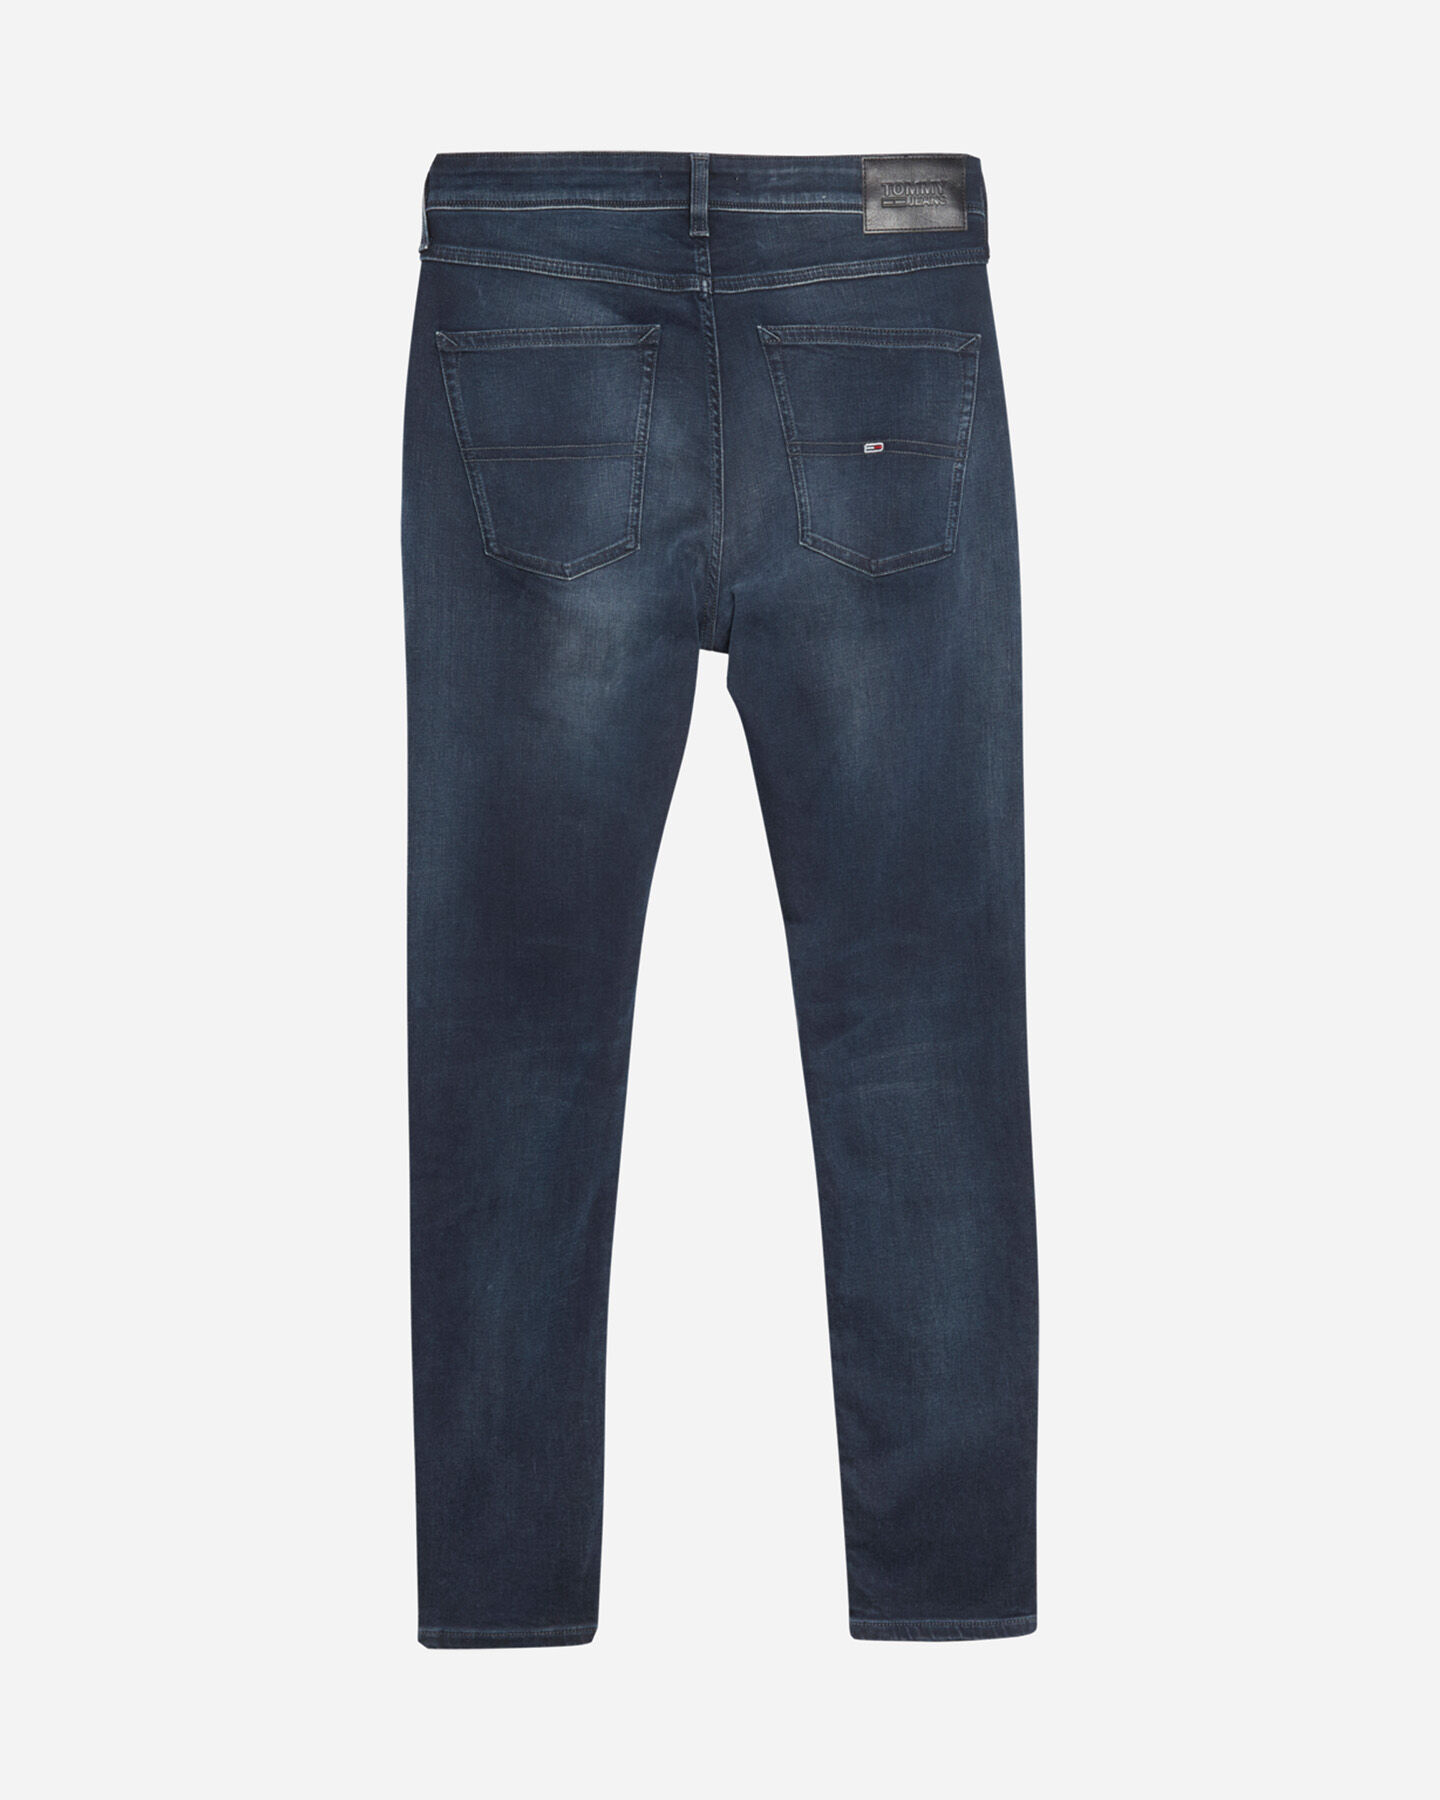  Jeans TOMMY HILFIGER SCANTON SLIM M S4088720|1BZ|29 scatto 1